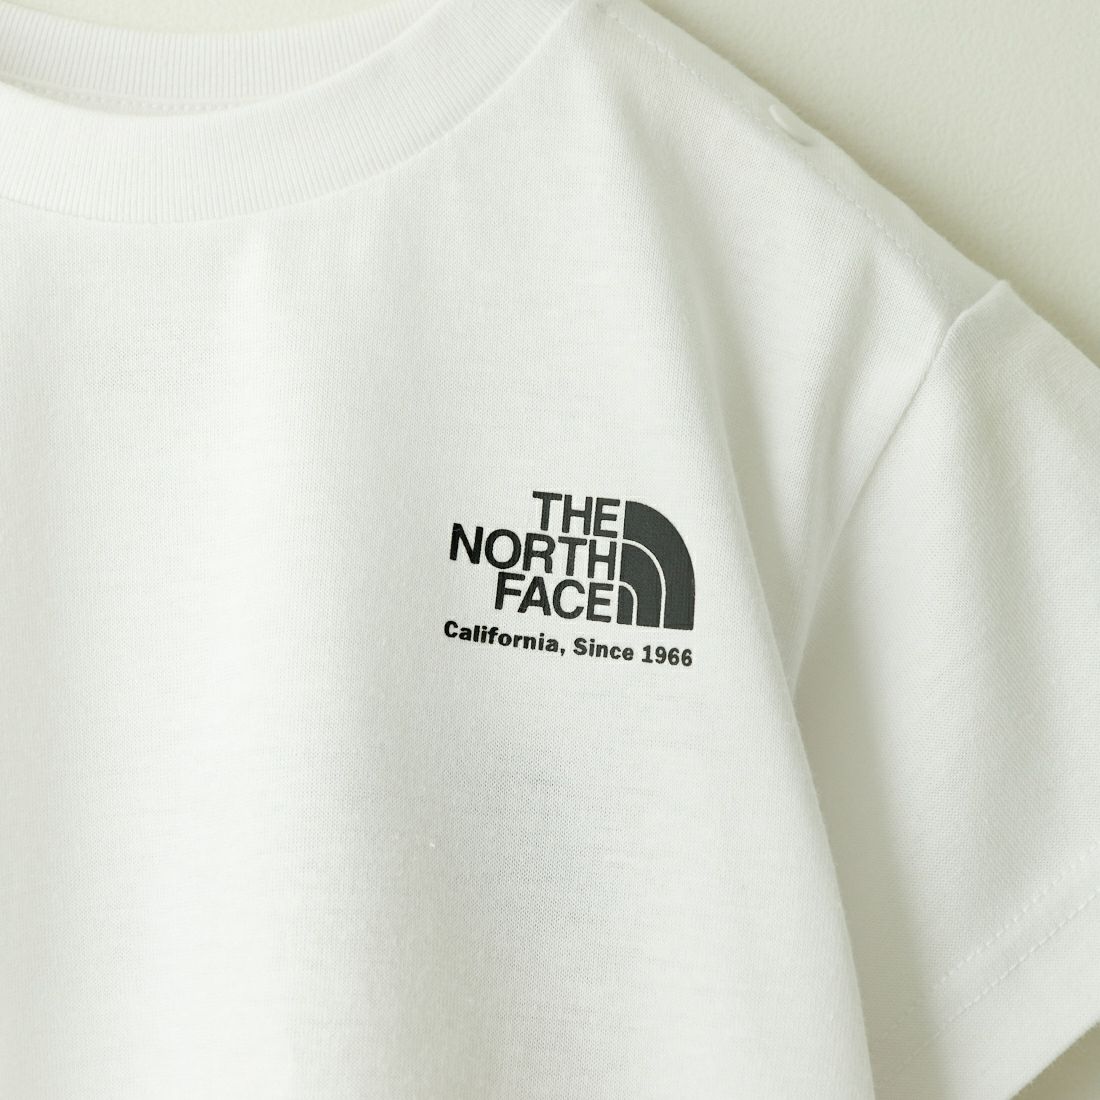 THE NORTH FACE [ザ ノースフェイス] ショートスリーブヒストリカルロゴTシャツ [NTB32356] W